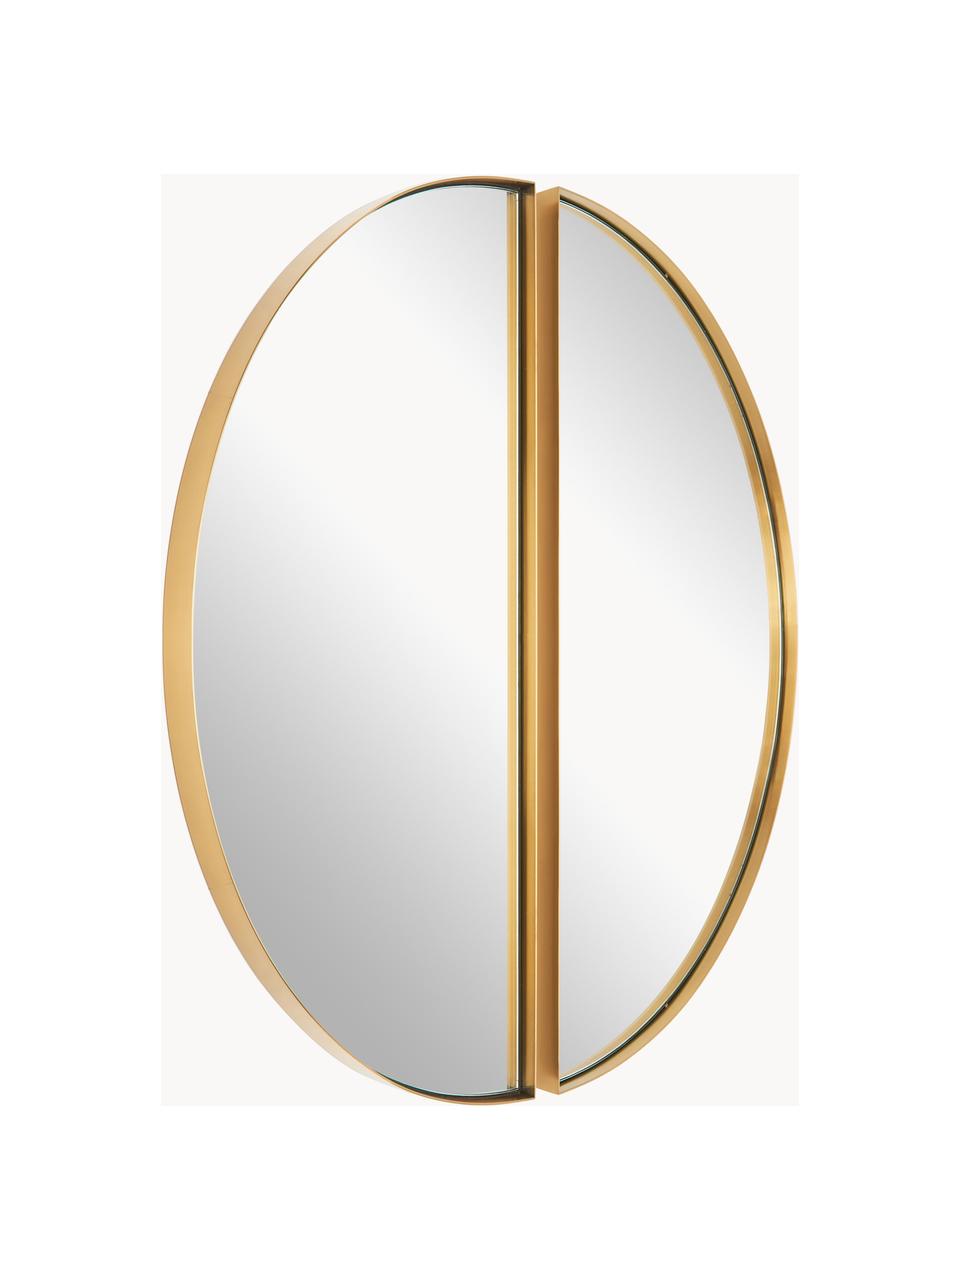 Wandspiegel Selena, 2 Stück, Rahmen: Metall, Spiegelfläche: Spiegelglas, Rückseite: Mitteldichte Holzfaserpla, Goldfarben, Ø 72 cm